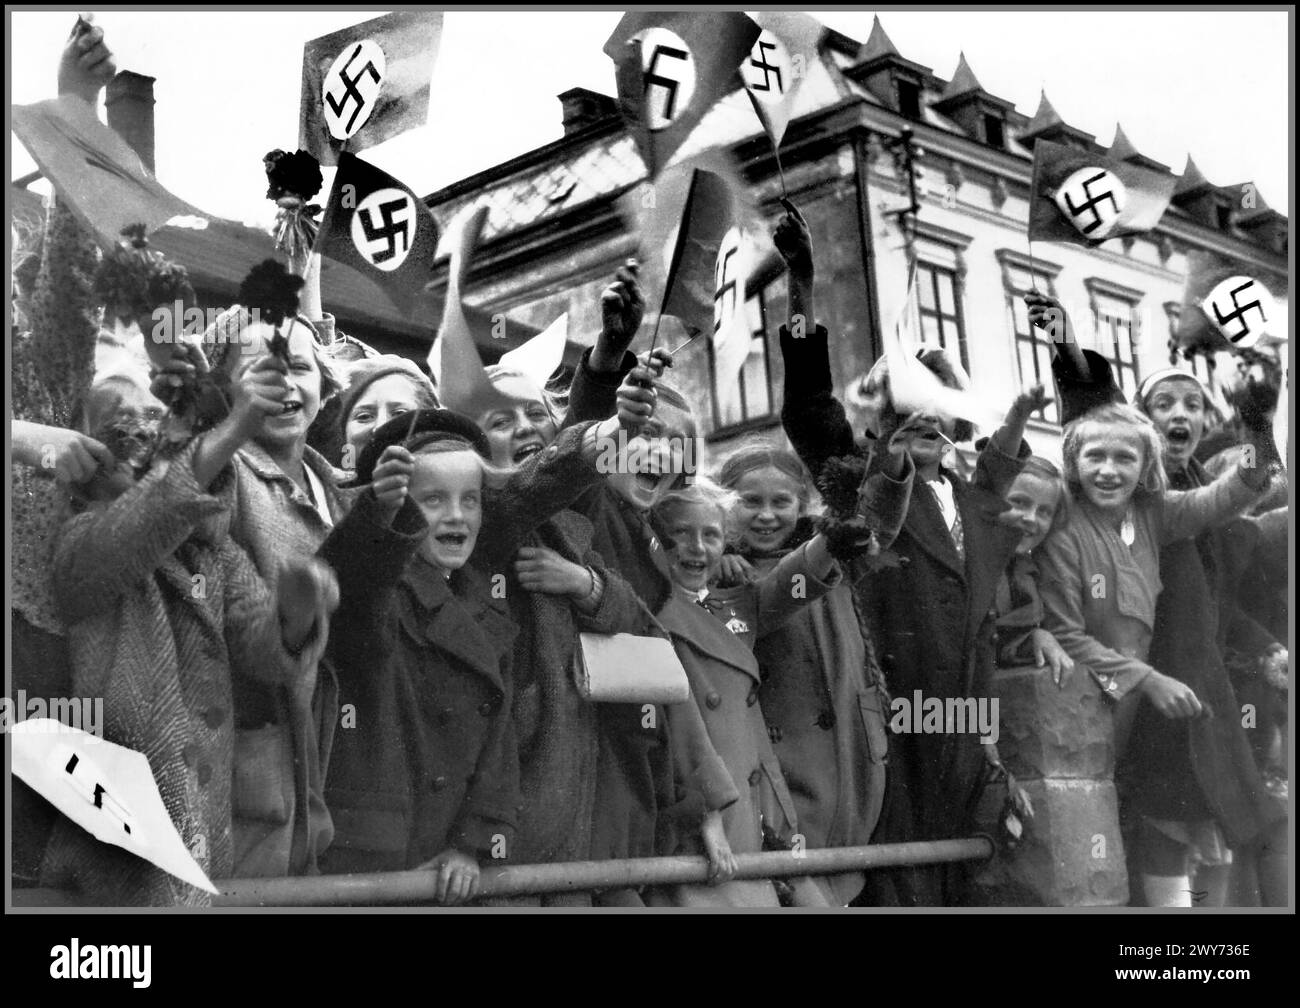 1938 Nazi-Propagandabild junger deutscher Kinder aus der tschechoslowakischen Stadt Trautenau (Trautenau ist der deutsche Name, Tschechoslowakisch ist Trutnov) grüßen die ankommenden Besatzungstruppen der Nazi-Wehrmacht. Trautenau Tschechoslowakei. Die militärische Besetzung der Tschechoslowakei durch Nazi-Deutschland begann 1938 mit der deutschen Annexion des Sudetenlandes, setzte sich mit der Schaffung des Protektorats Böhmen und Mähren fort und erstreckte sich bis Ende 1944 auf alle Teile der Tschechoslowakei Stockfoto